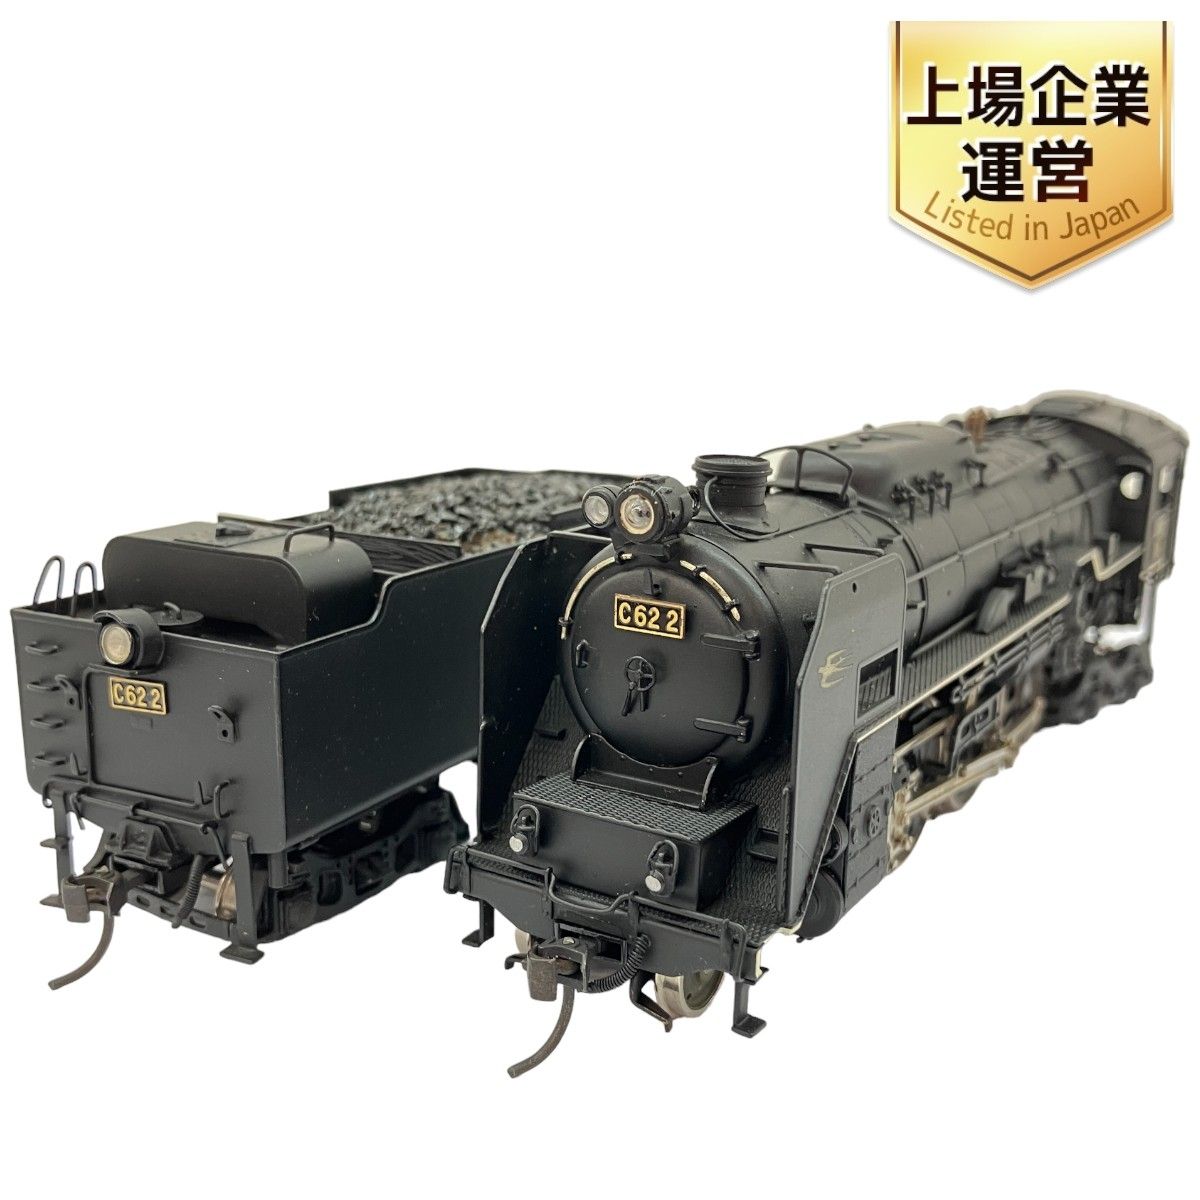 天賞堂 No.491 国鉄 C62 2 蒸気機関車 HOゲージ 鉄道模型 Tenshodo ジャンク C9069114